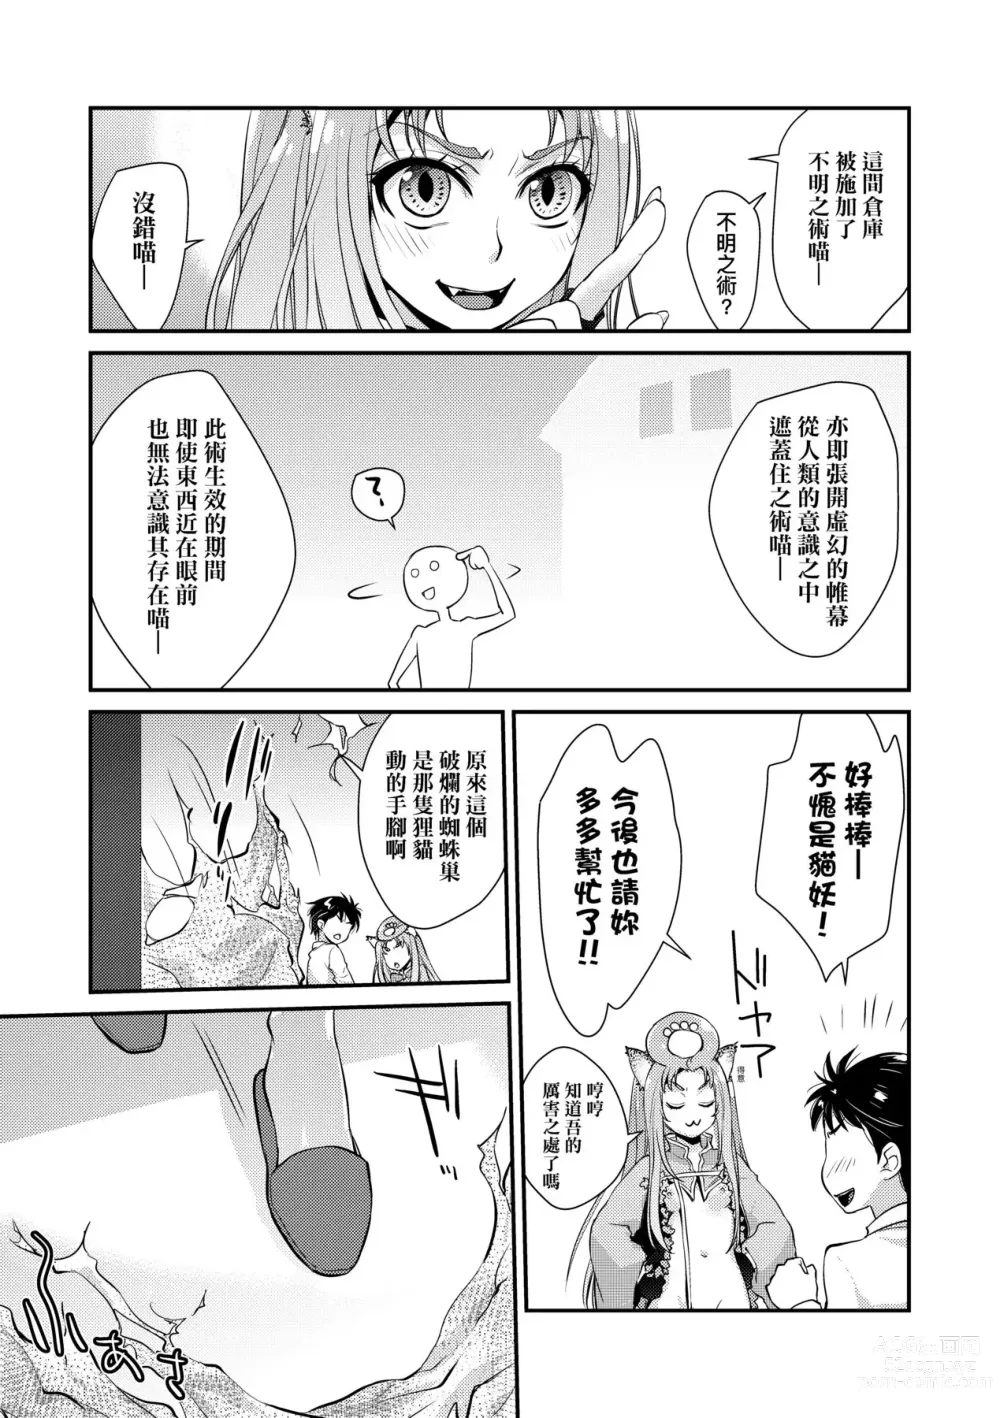 Page 210 of manga Echiechi JK Houimou (decensored)